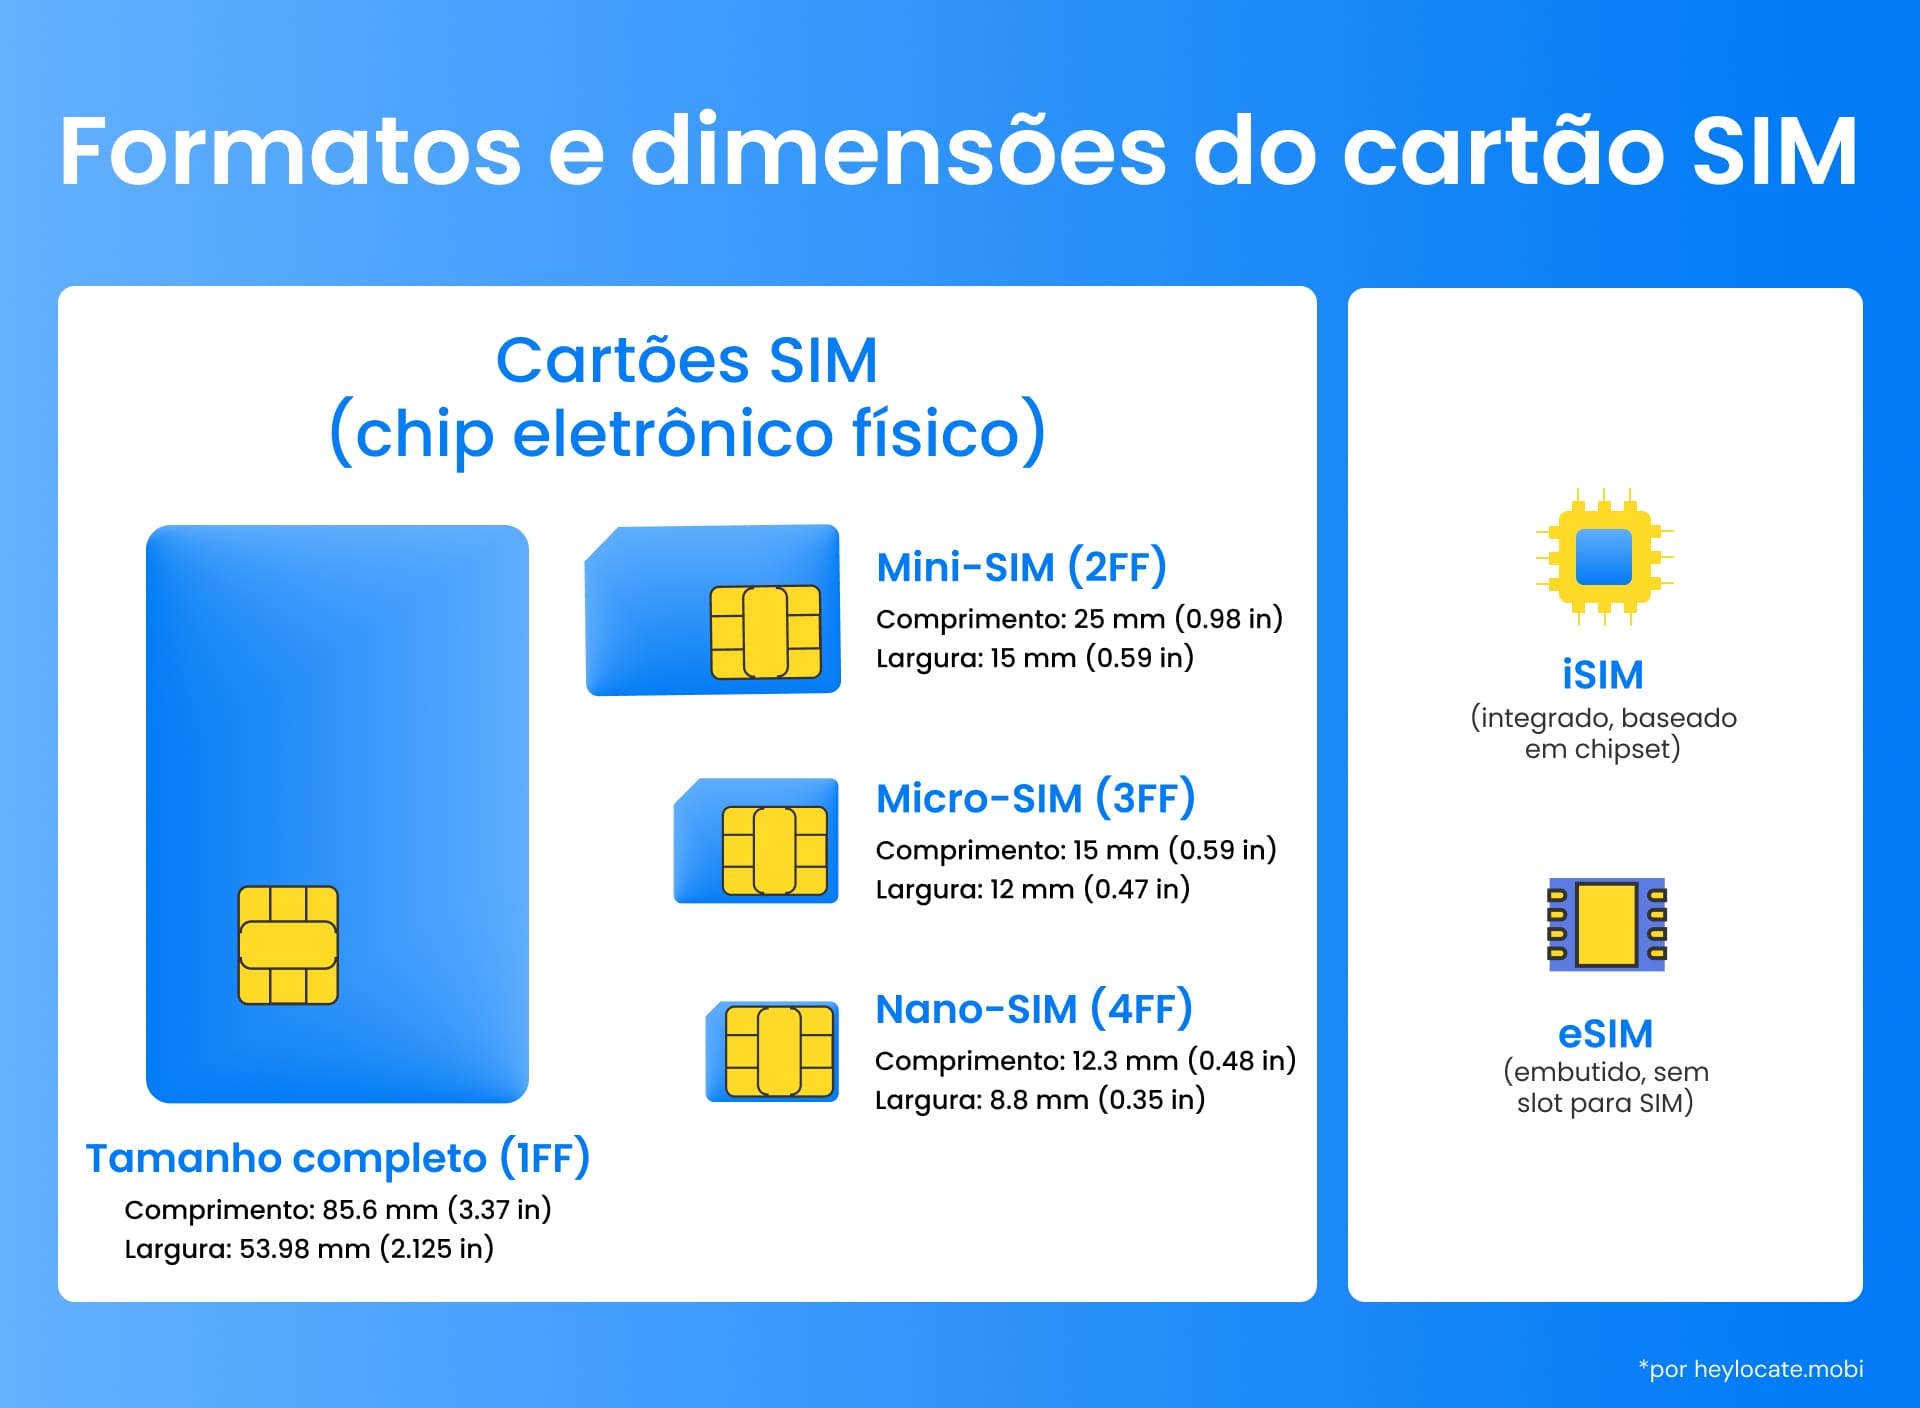 Visão geral dos tipos de cartões SIM com seus respectivos tamanhos; destaca a evolução para tecnologias incorporadas